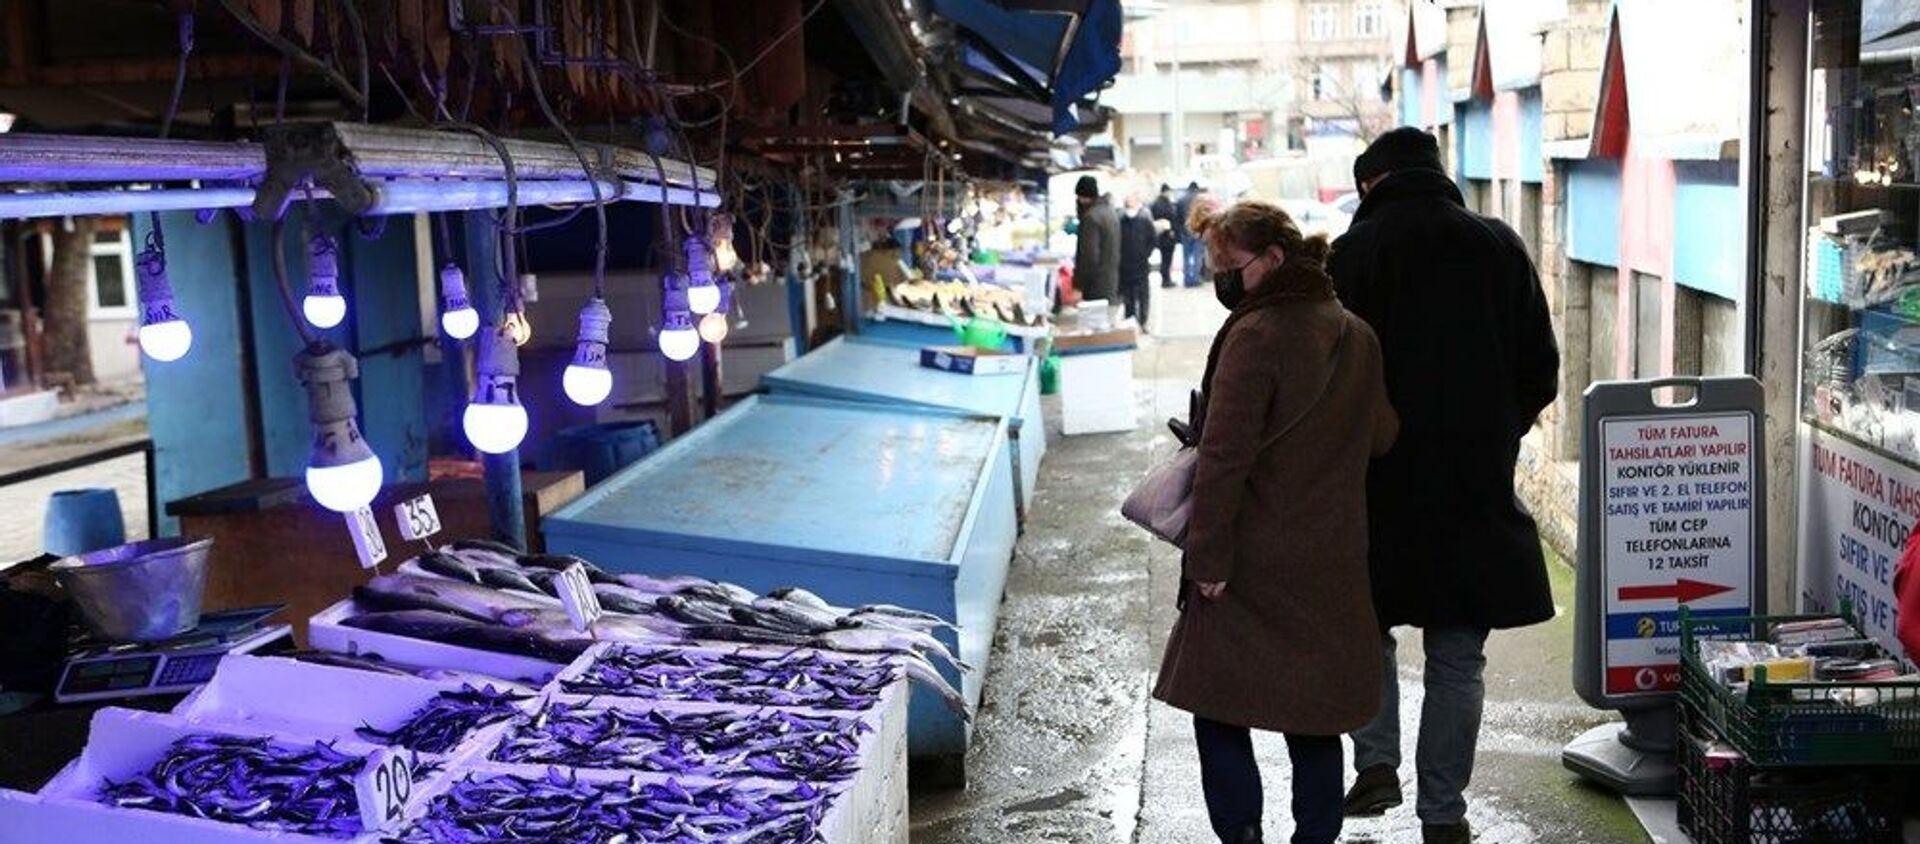 Balıkçılar ve Manavcılar Derneği Başkanı Cemal Kaya Şamlıoğlu, hava muhalefetinden dolayı son birkaç gündür balıkçıların denize açılamadığı için tezgahlarda günlük taze balık satılamadığını söyledi. - Sputnik Türkiye, 1920, 18.02.2021